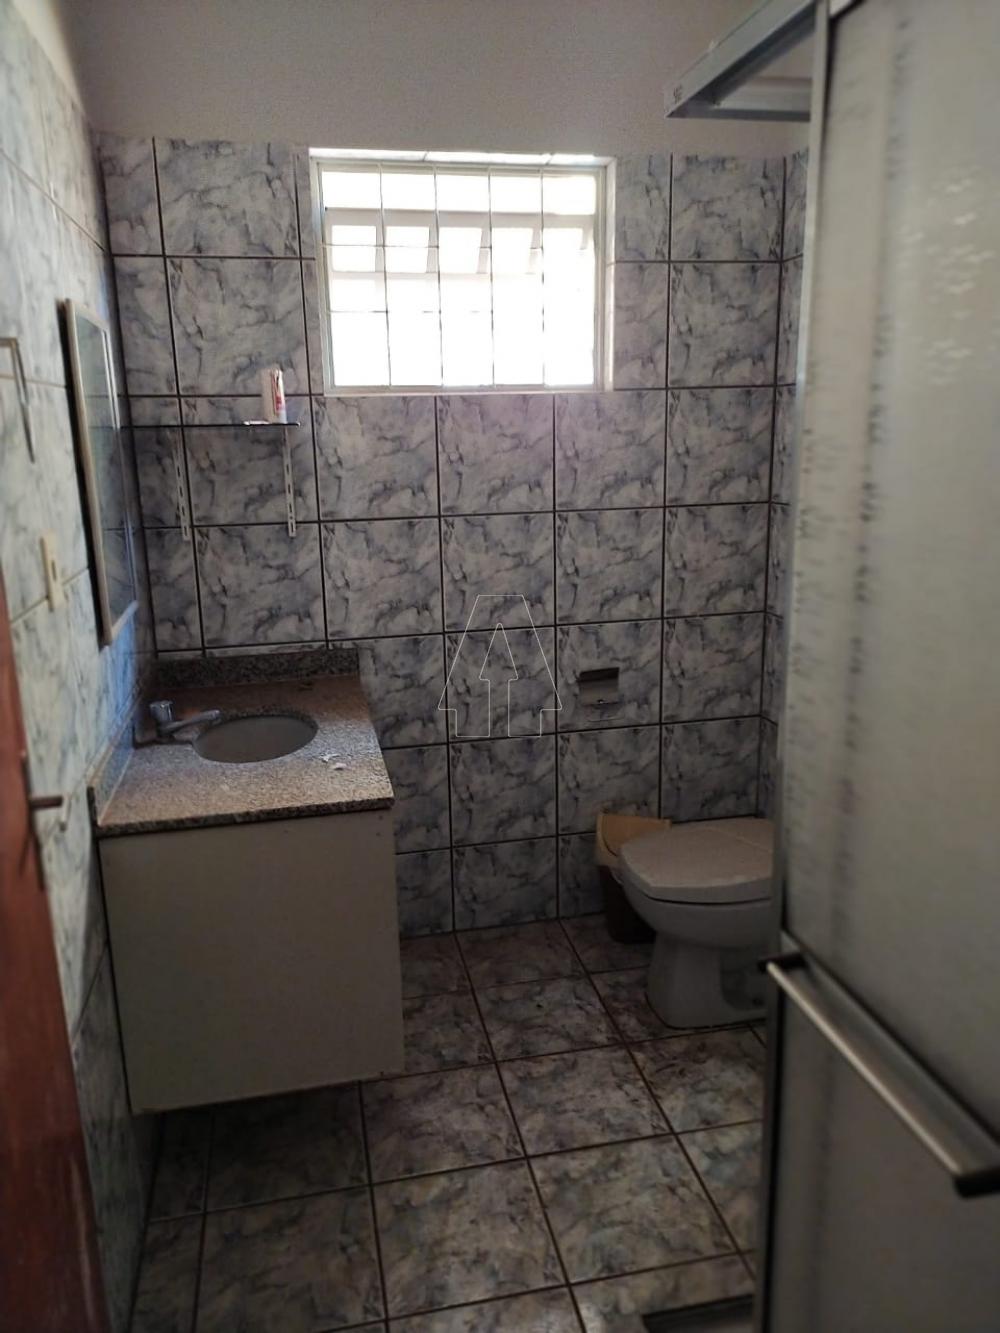 Comprar Casa / Residencial em Araçatuba R$ 350.000,00 - Foto 6